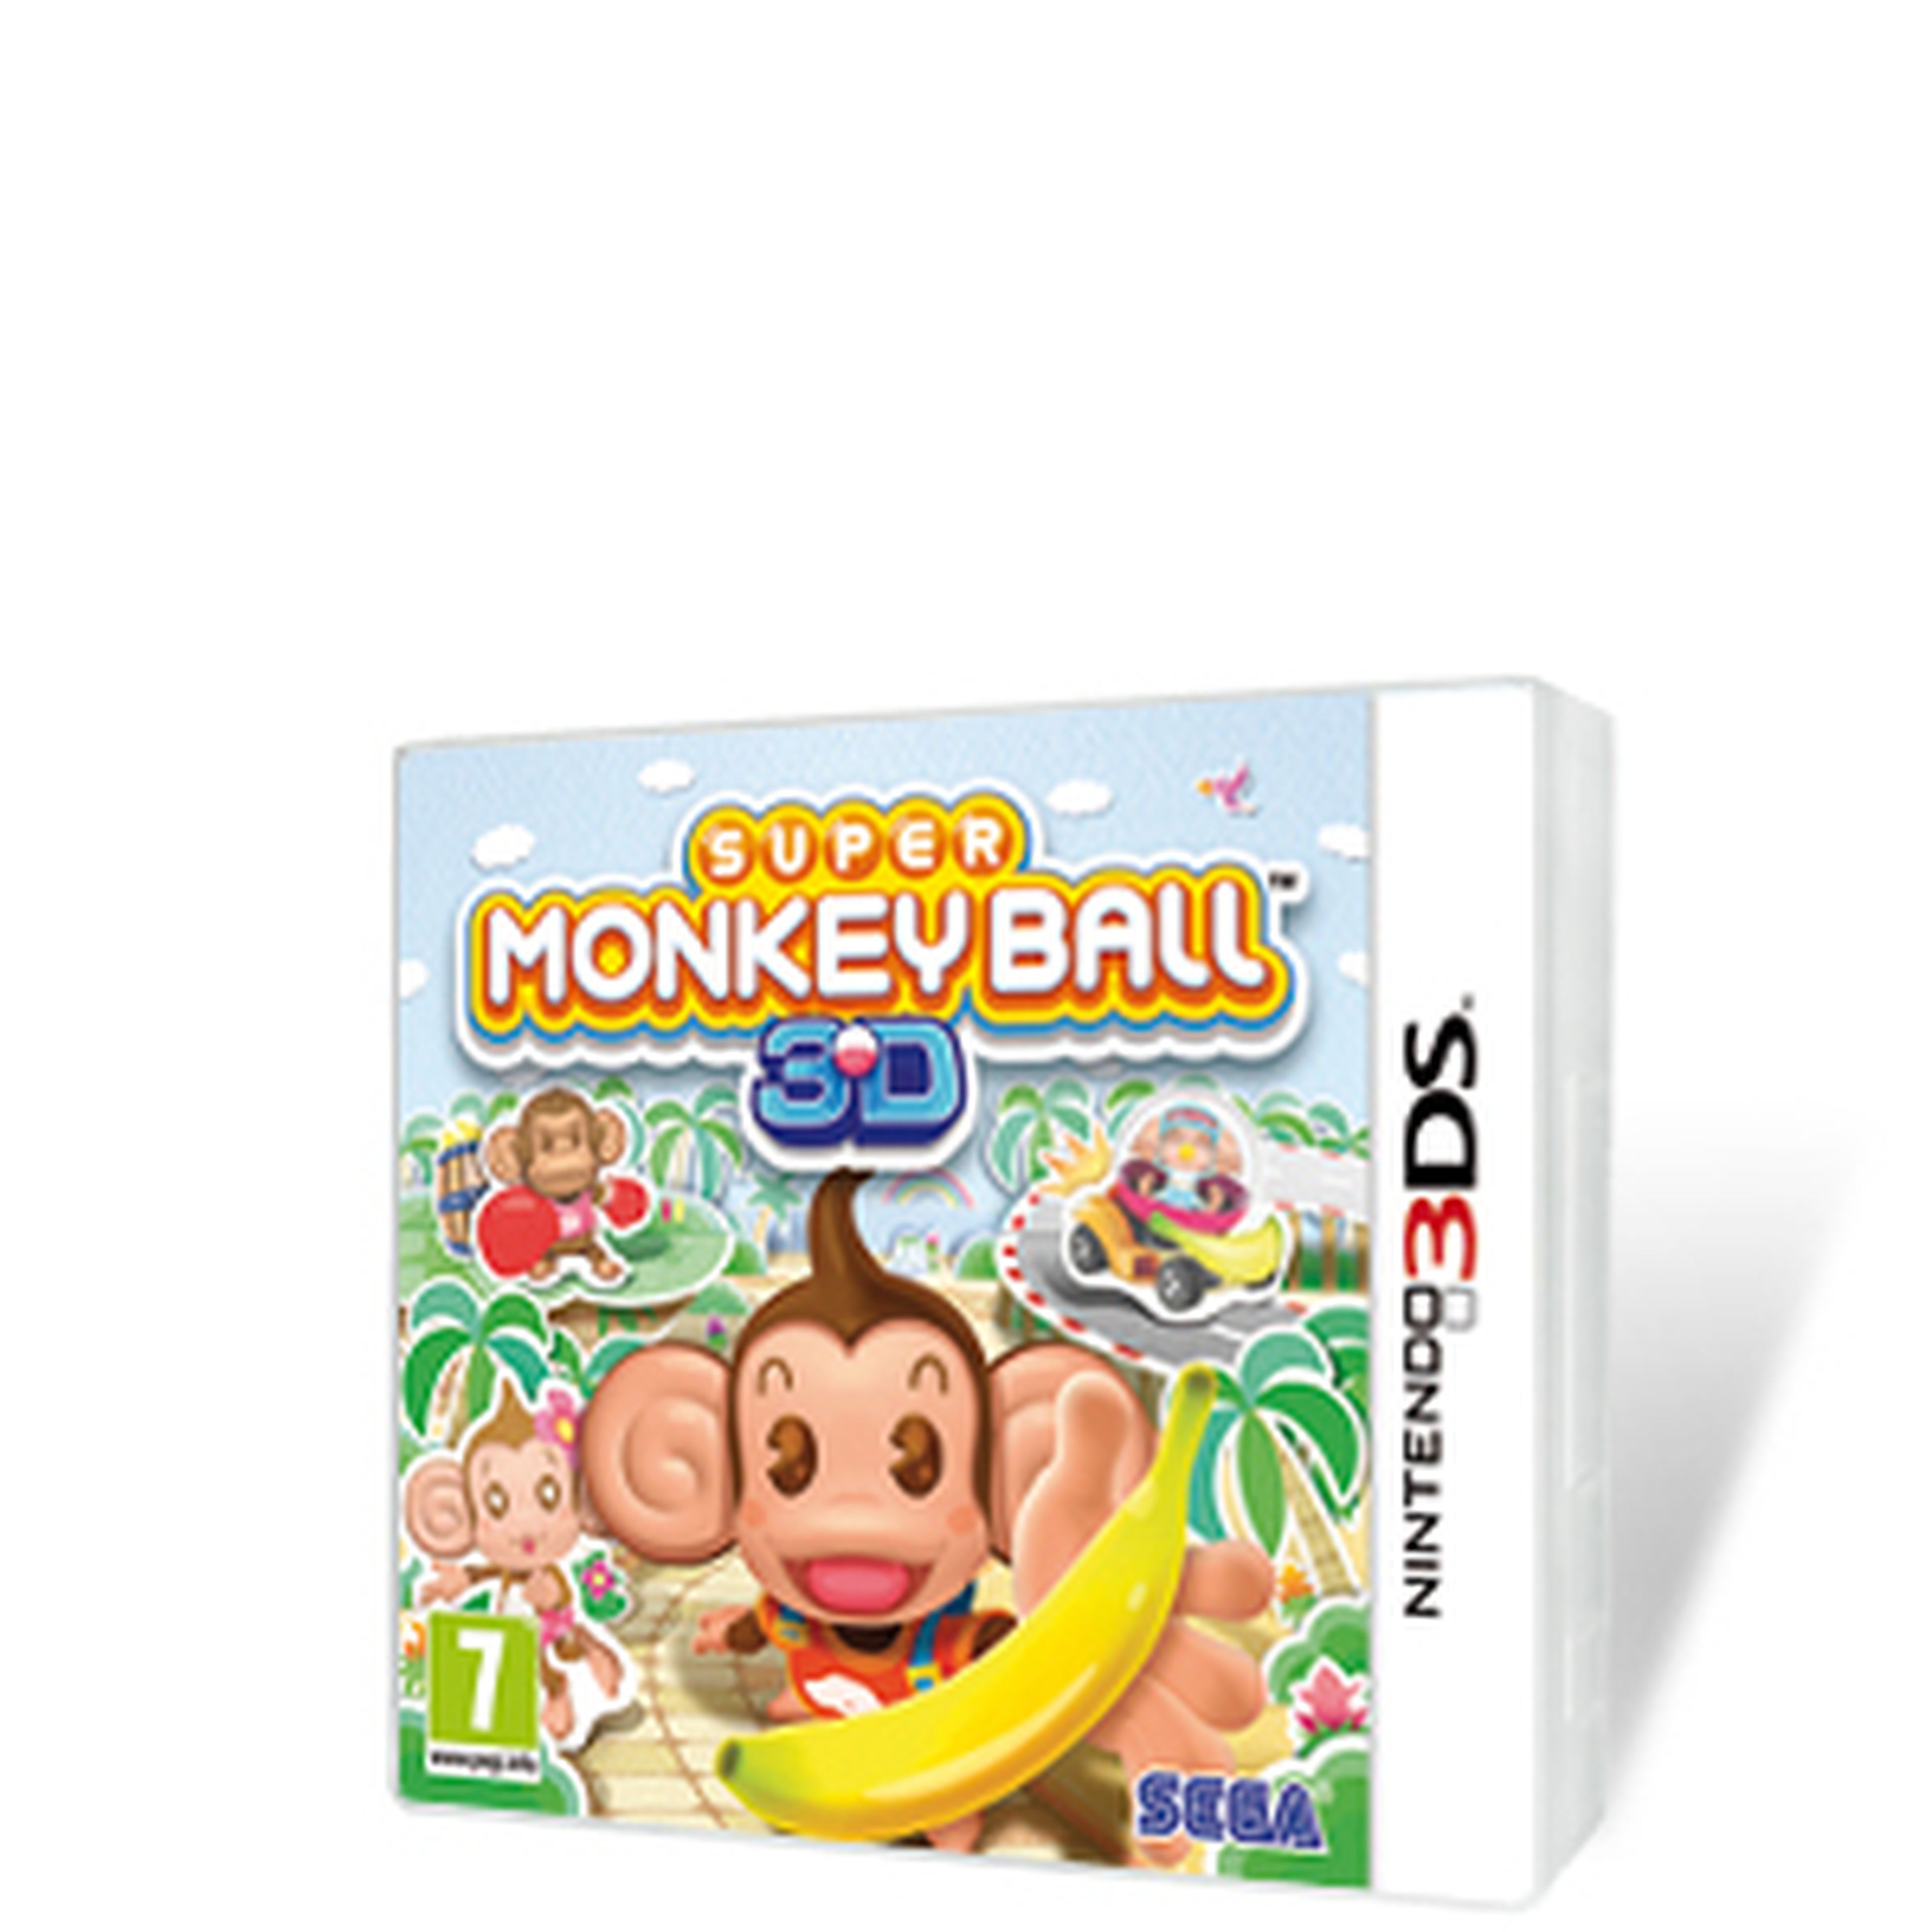 Super Monkey Ball 3D para 3DS